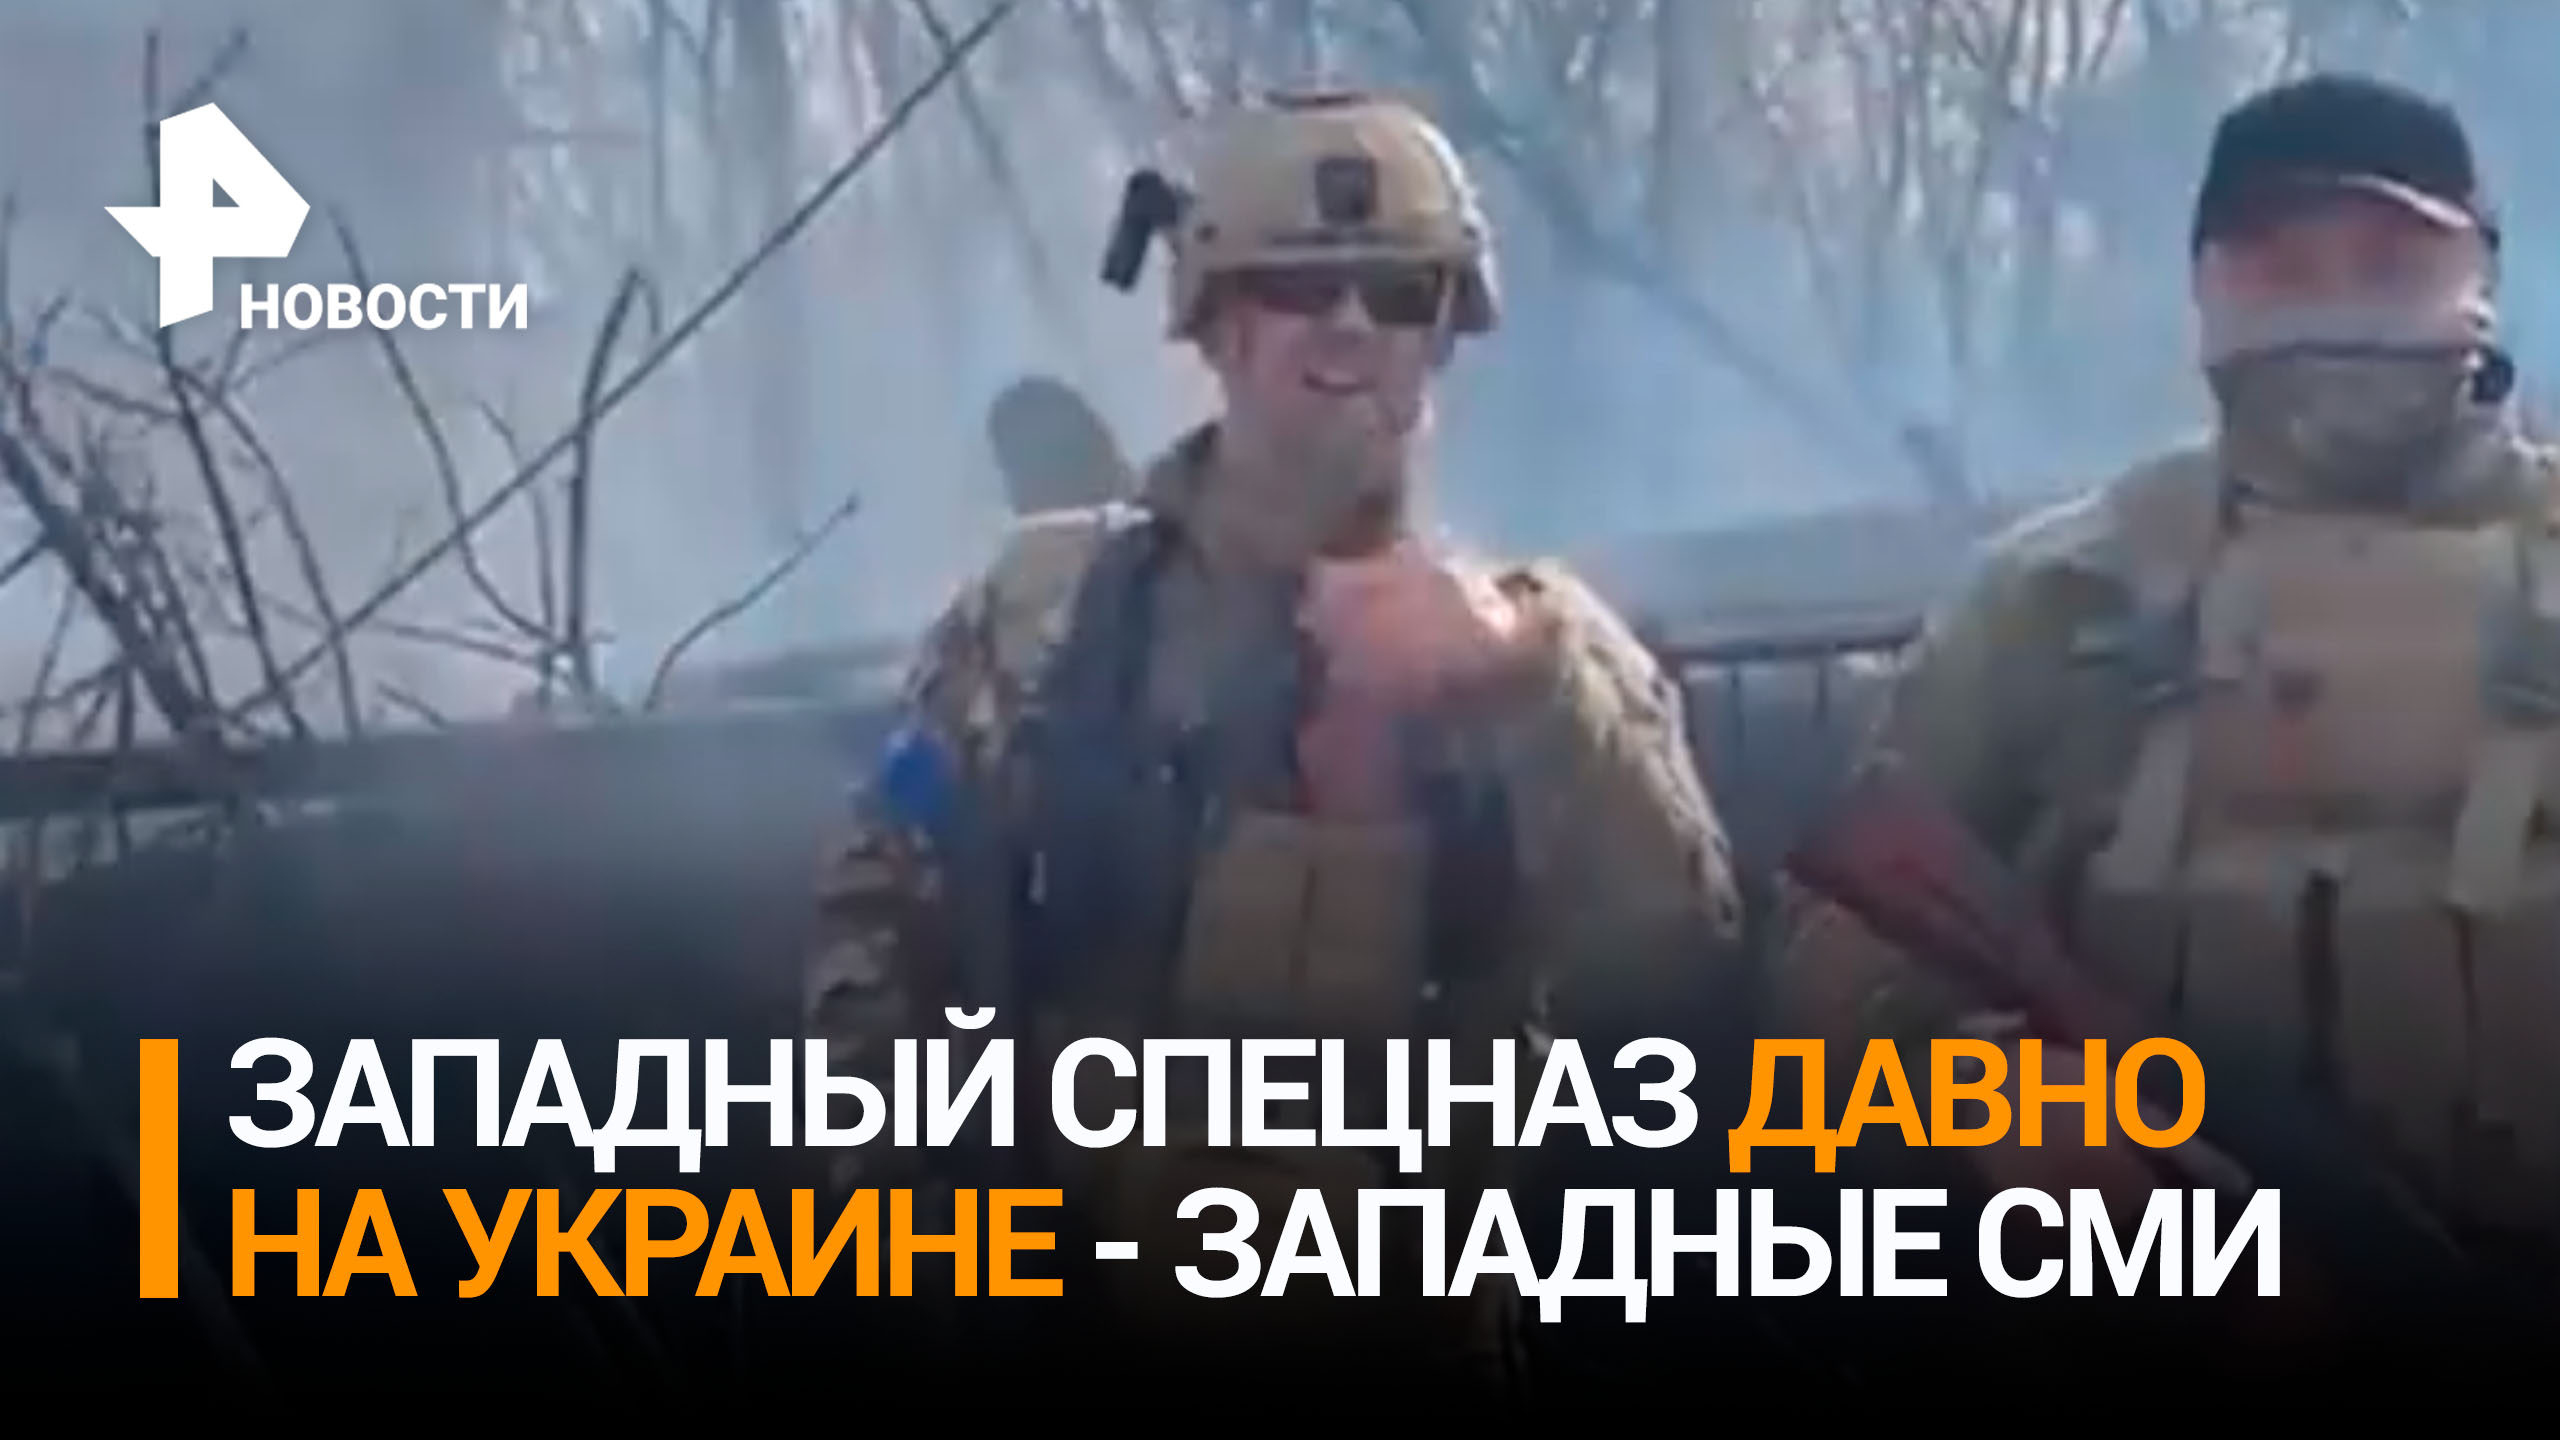 Западный спецназ присутствует на Украине, но об этом не сообщали официально — западные СМИ / РЕН